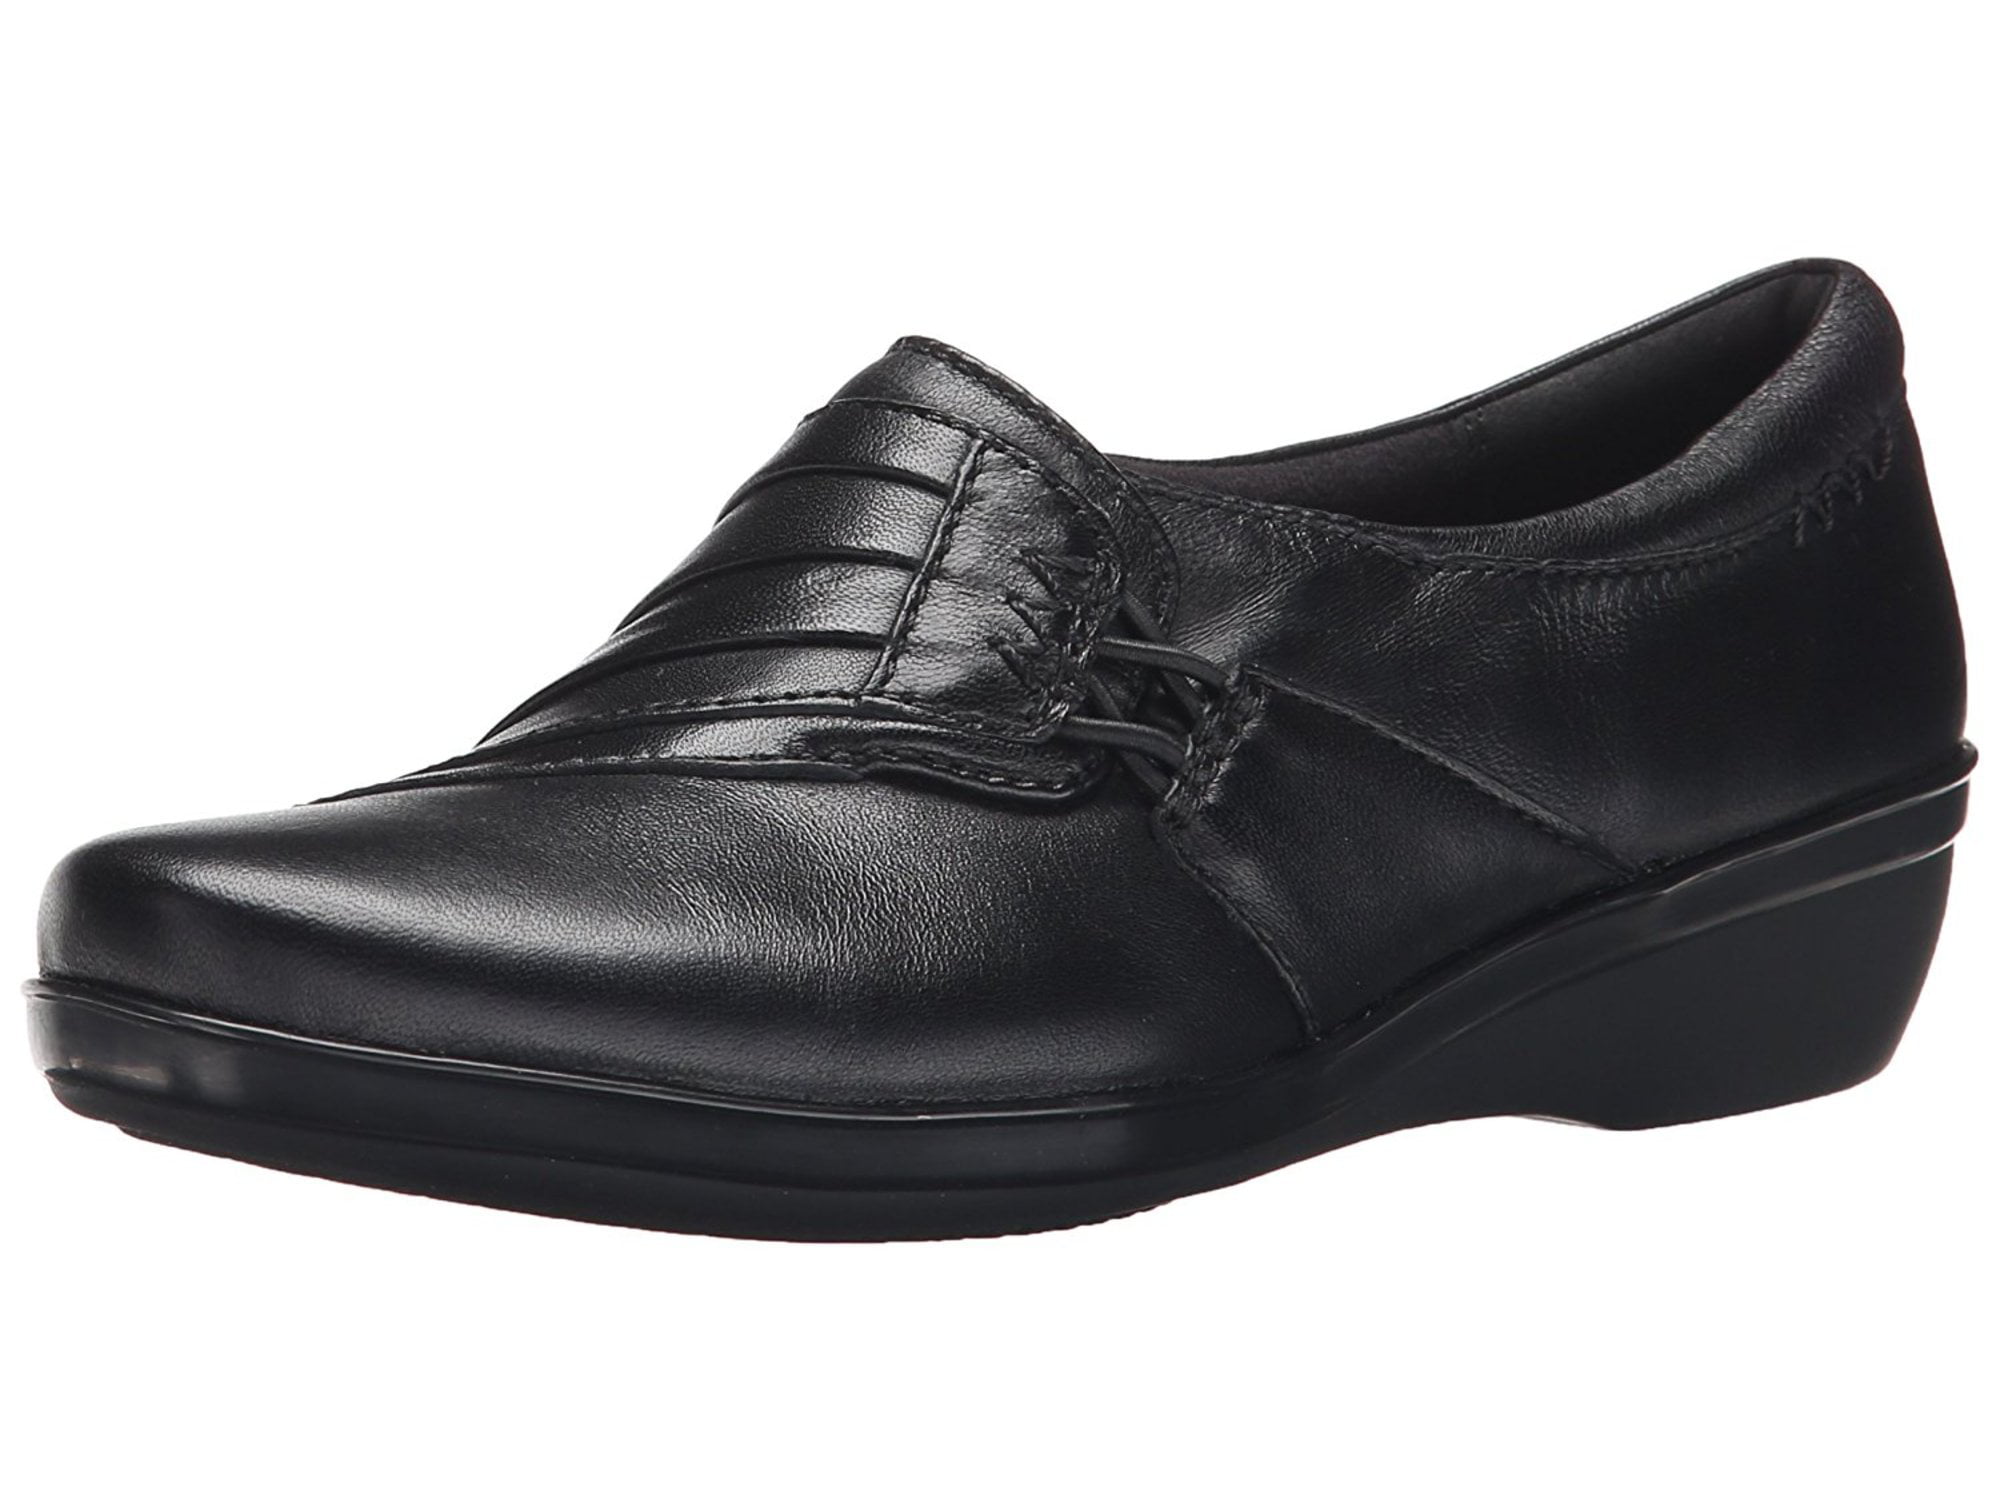 Clarks - clarks women's everlay iris slip-on loafer, black leather, 10 ...